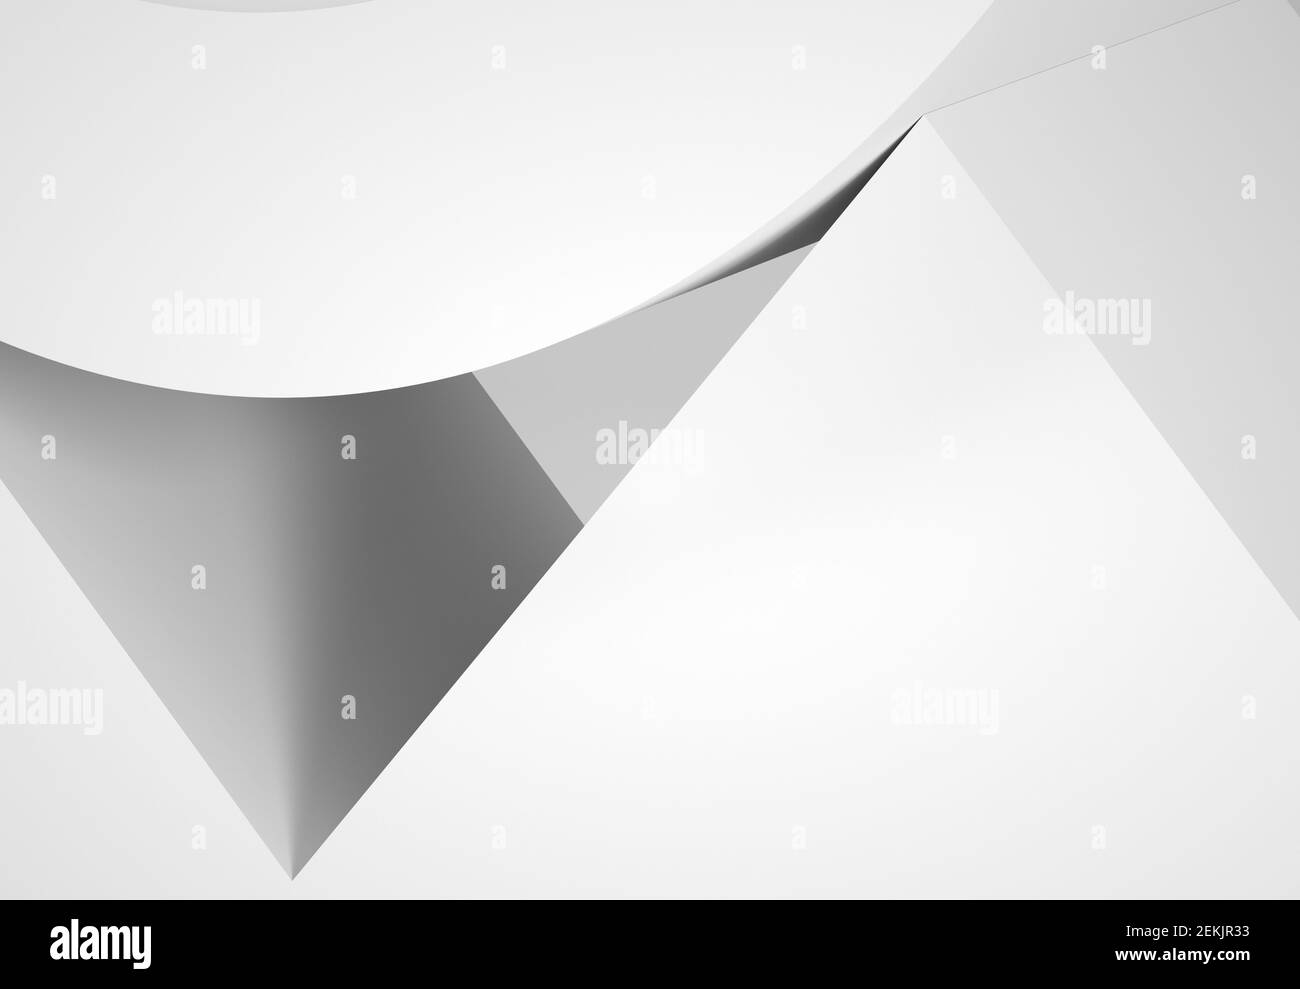 Résumé installation minimale. Formes géométriques blanches avec ombres douces. illustration du rendu 3d Banque D'Images